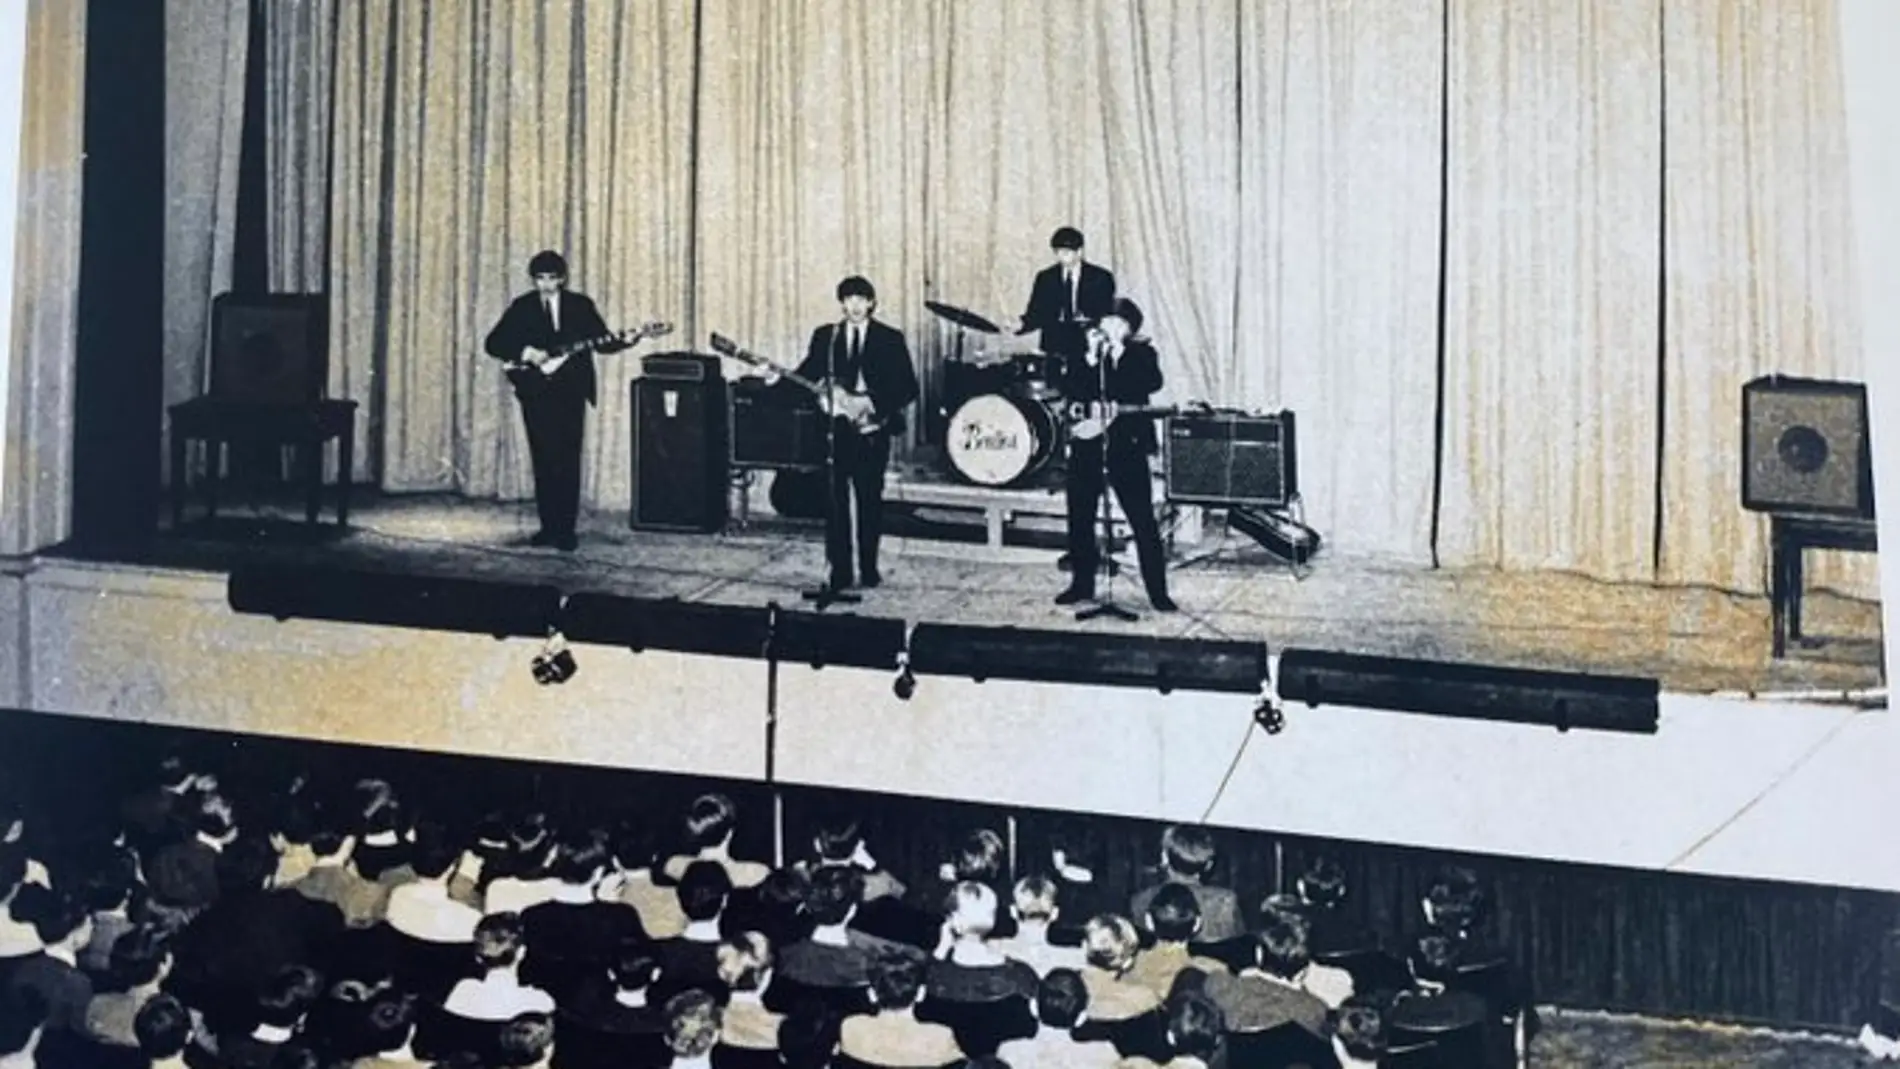 Sale a la luz el primer concierto grabado de Los Beatles cuando eran anónimos